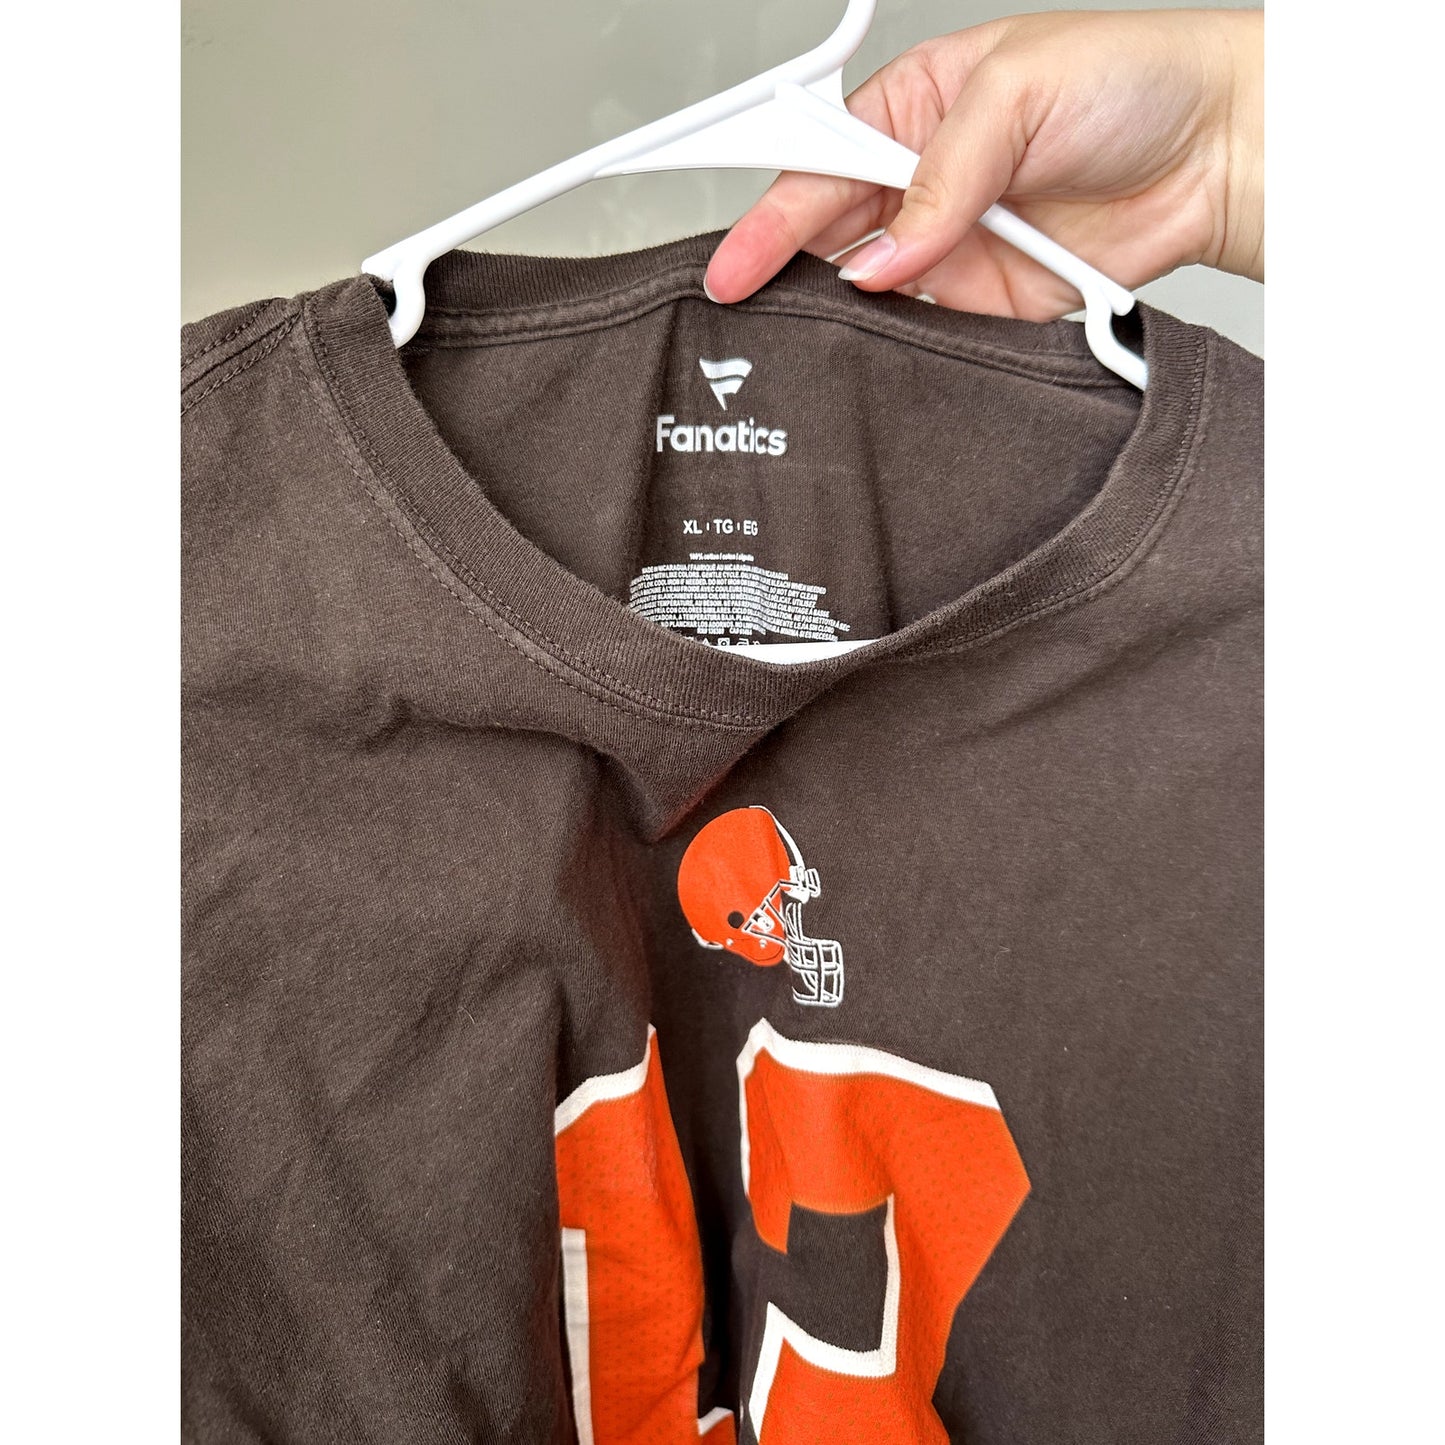 Cleveland Brown Beckham Jr Graphic T-shirt, Size XL